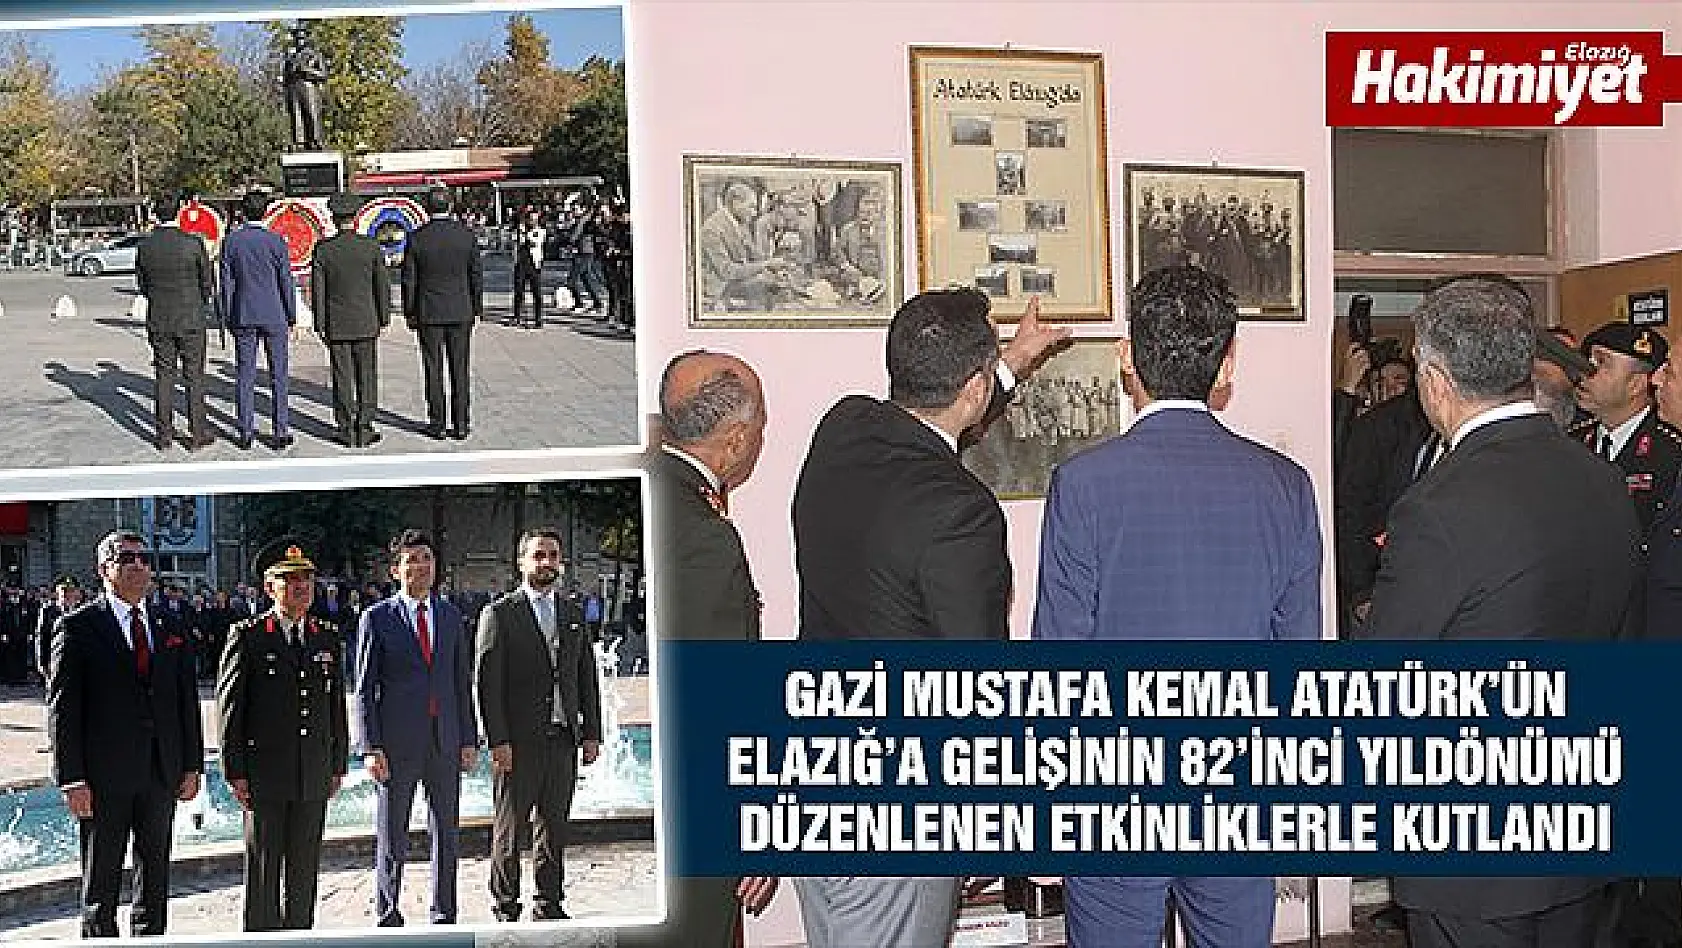 Atatürk'ün Elazığ'a gelişinin 82. yıl dönümü